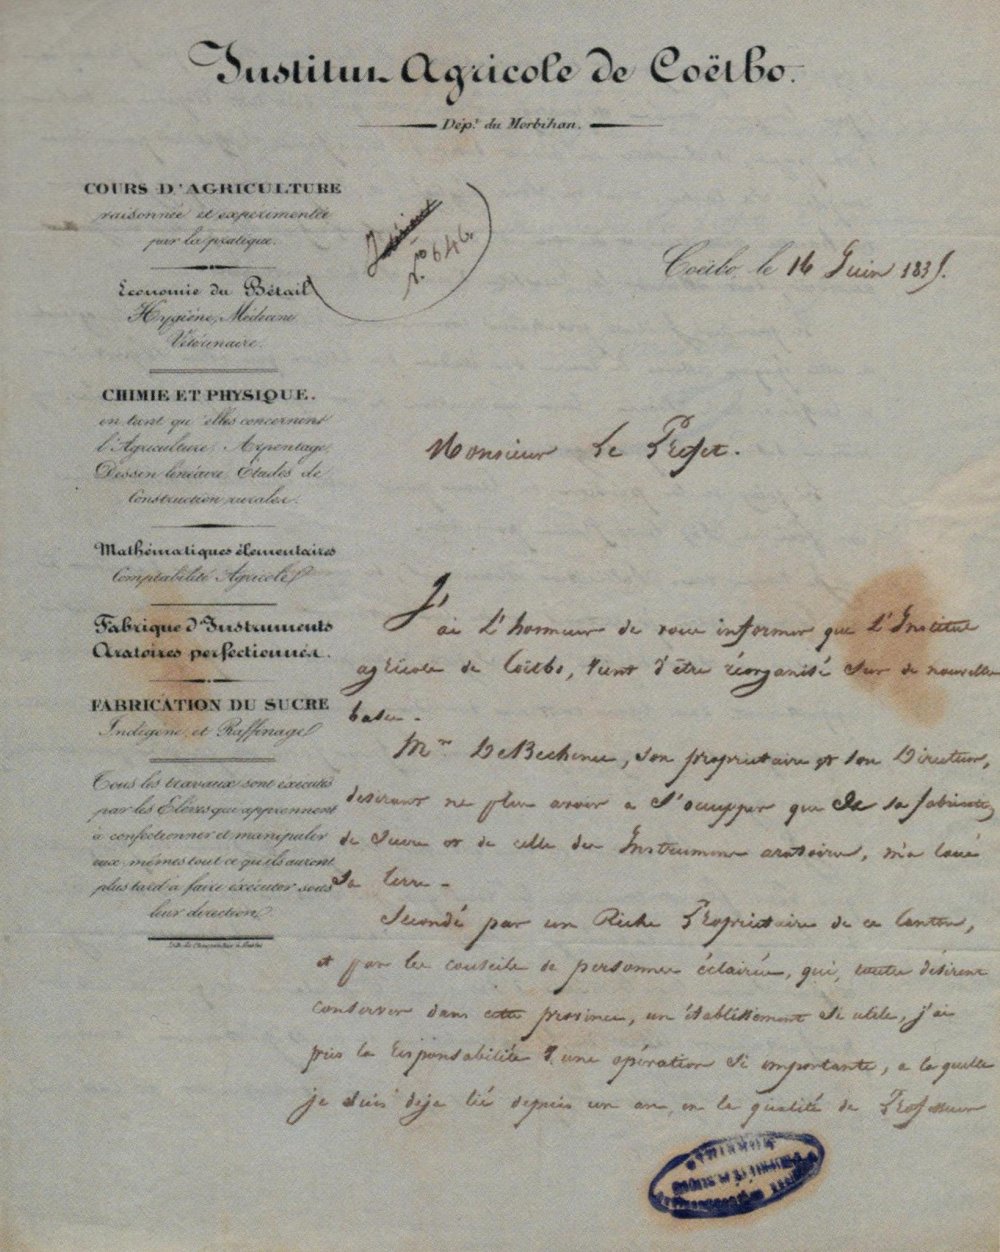 Lettre au préfet à propos de la réorganisation de l'Institut agricole de Coëtbo (1835)